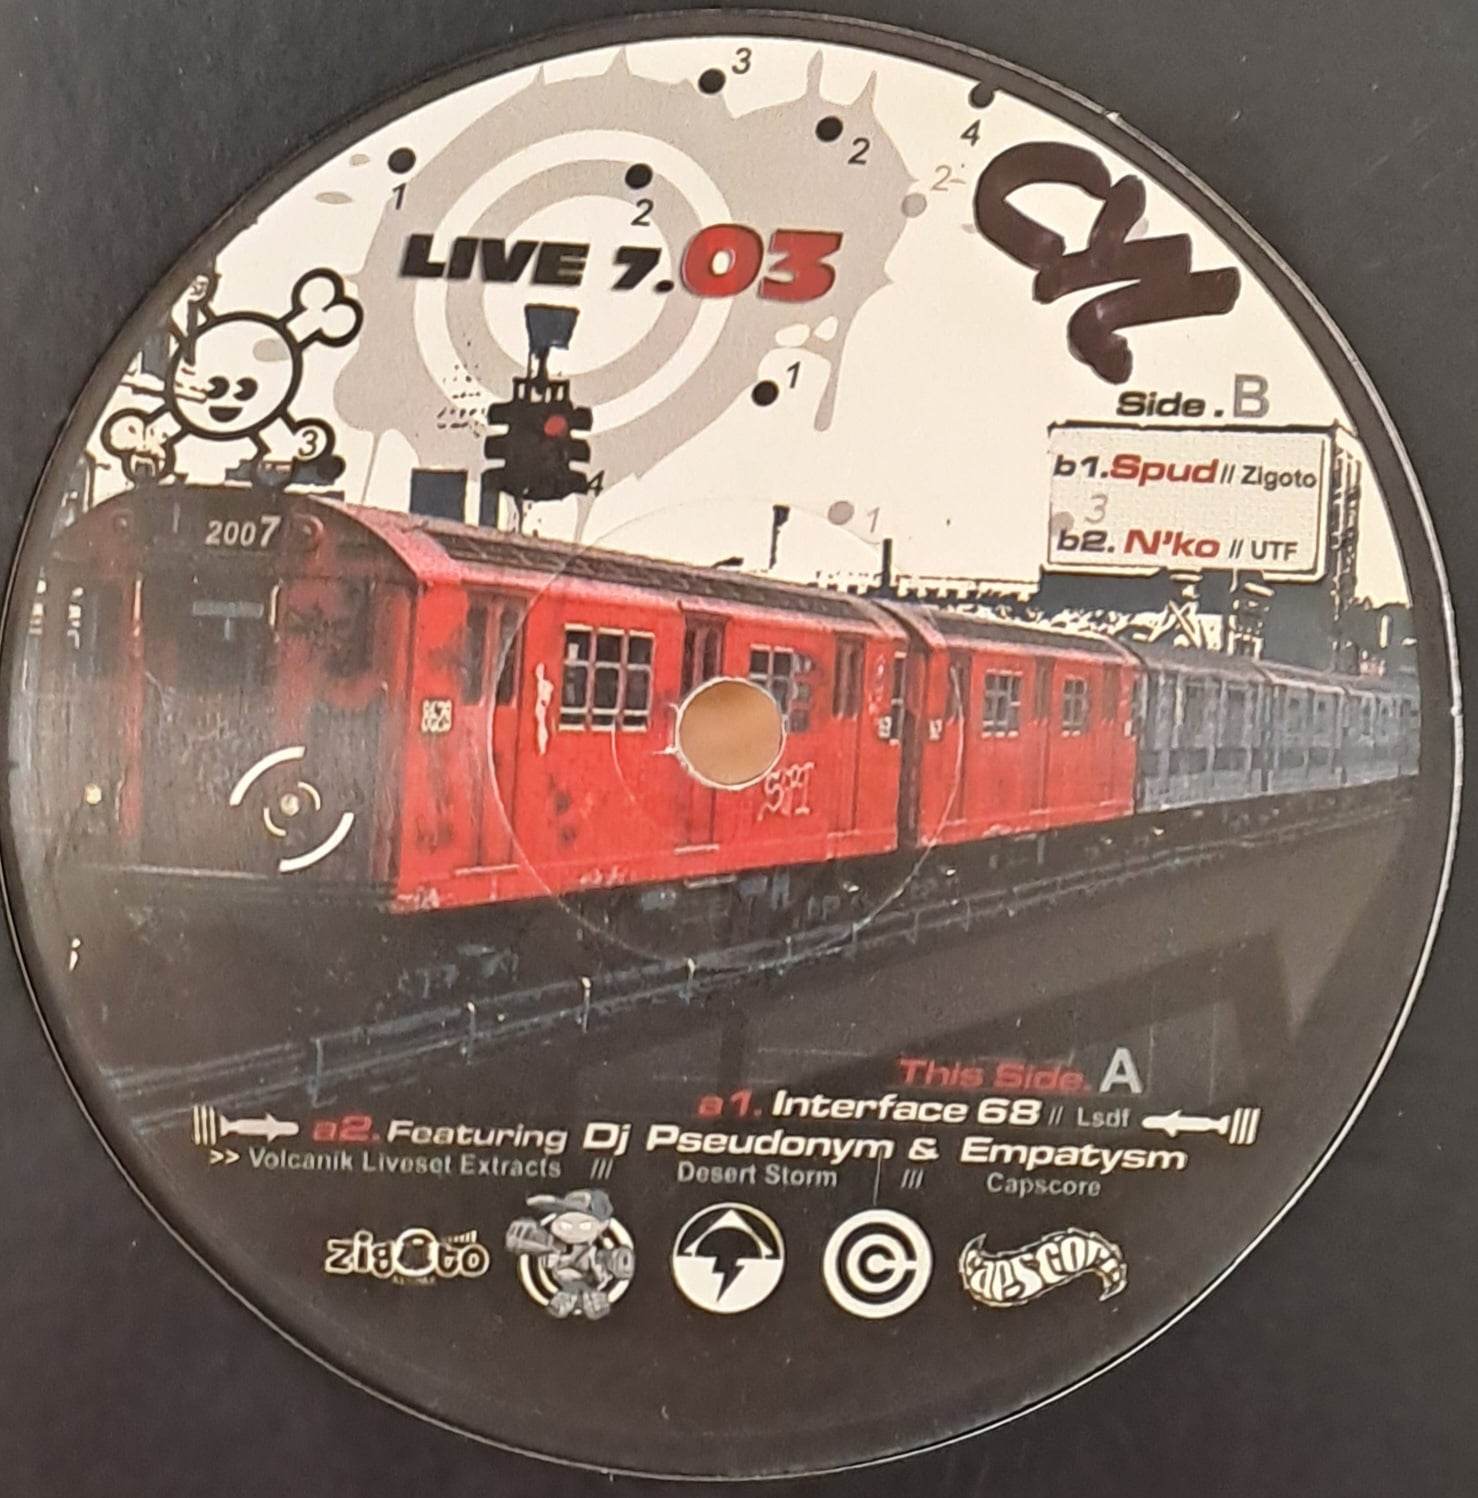 Live 7-03 - vinyle freetekno